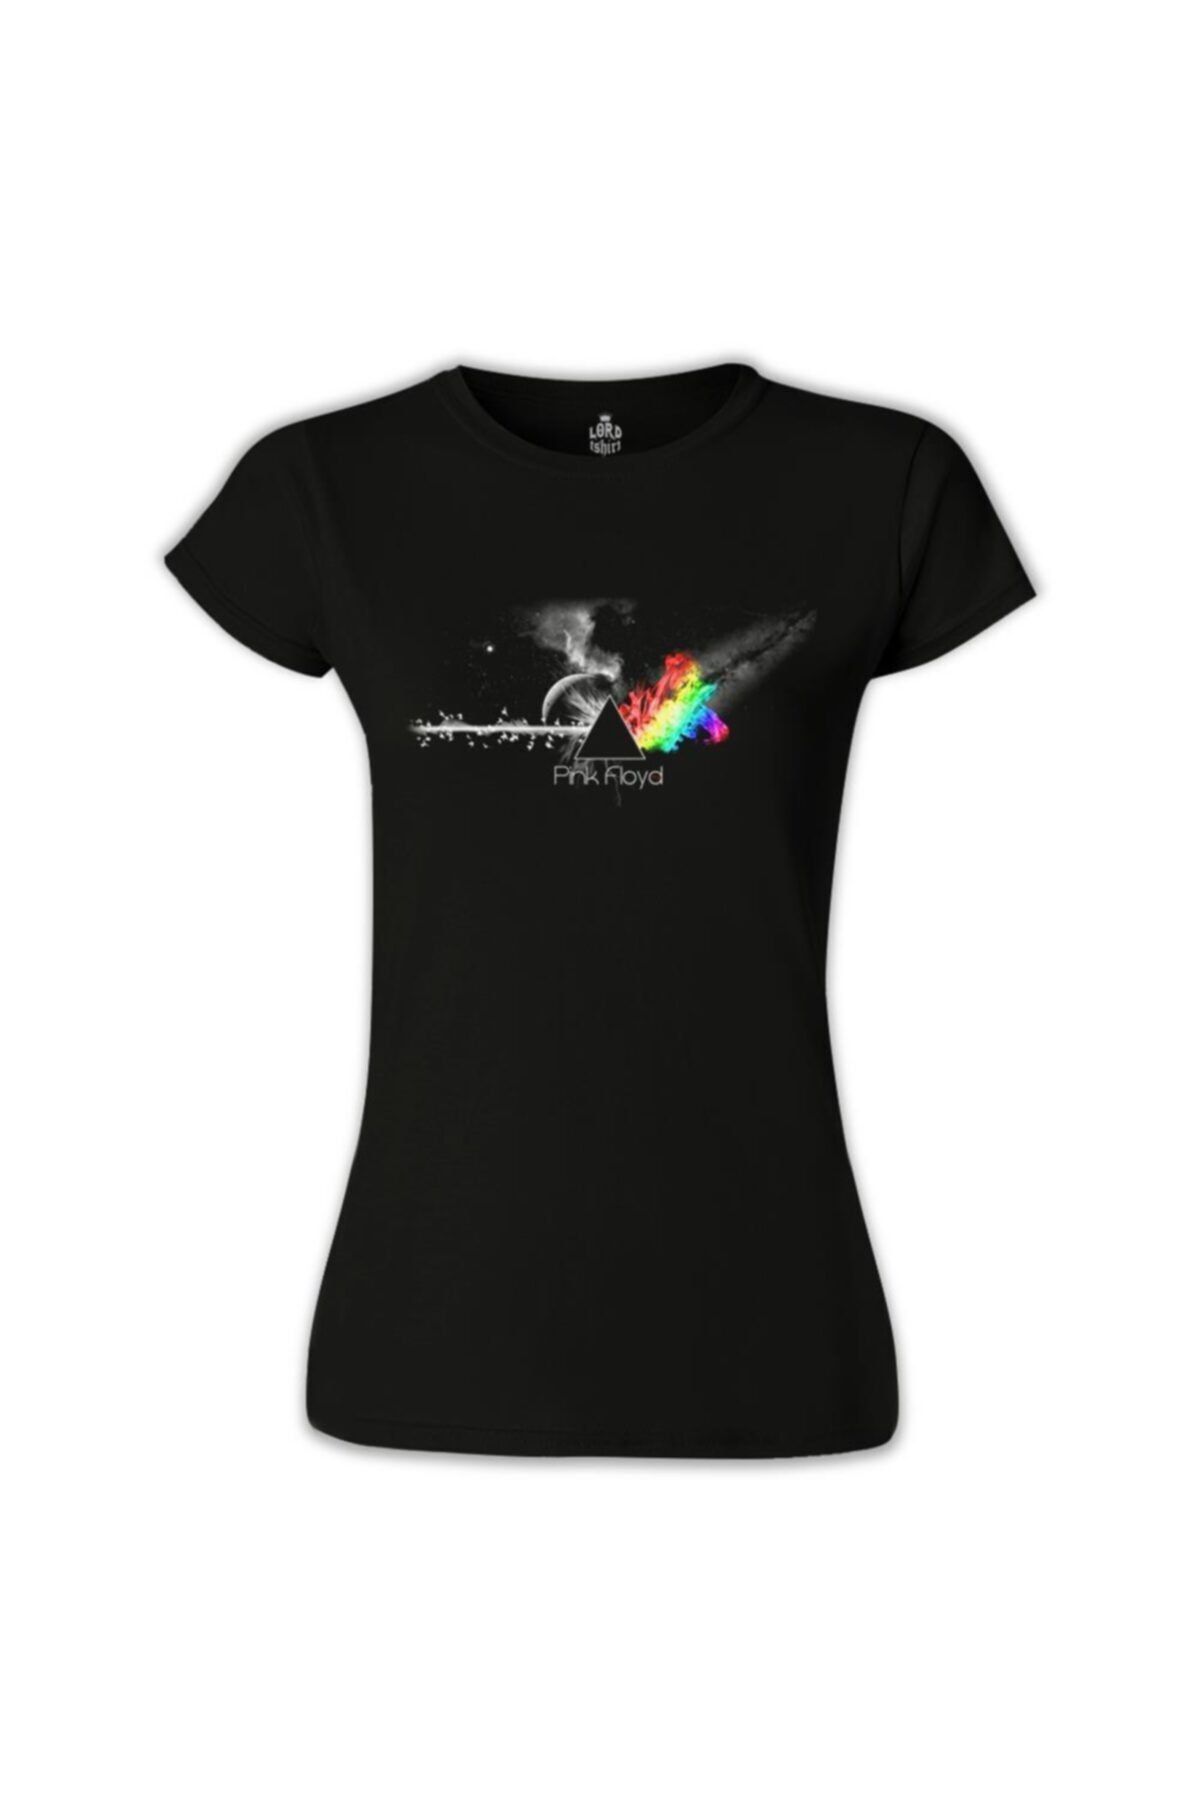 Lord T-Shirt Kadın Siyah Pink Floyd In Clouds T-Shirt